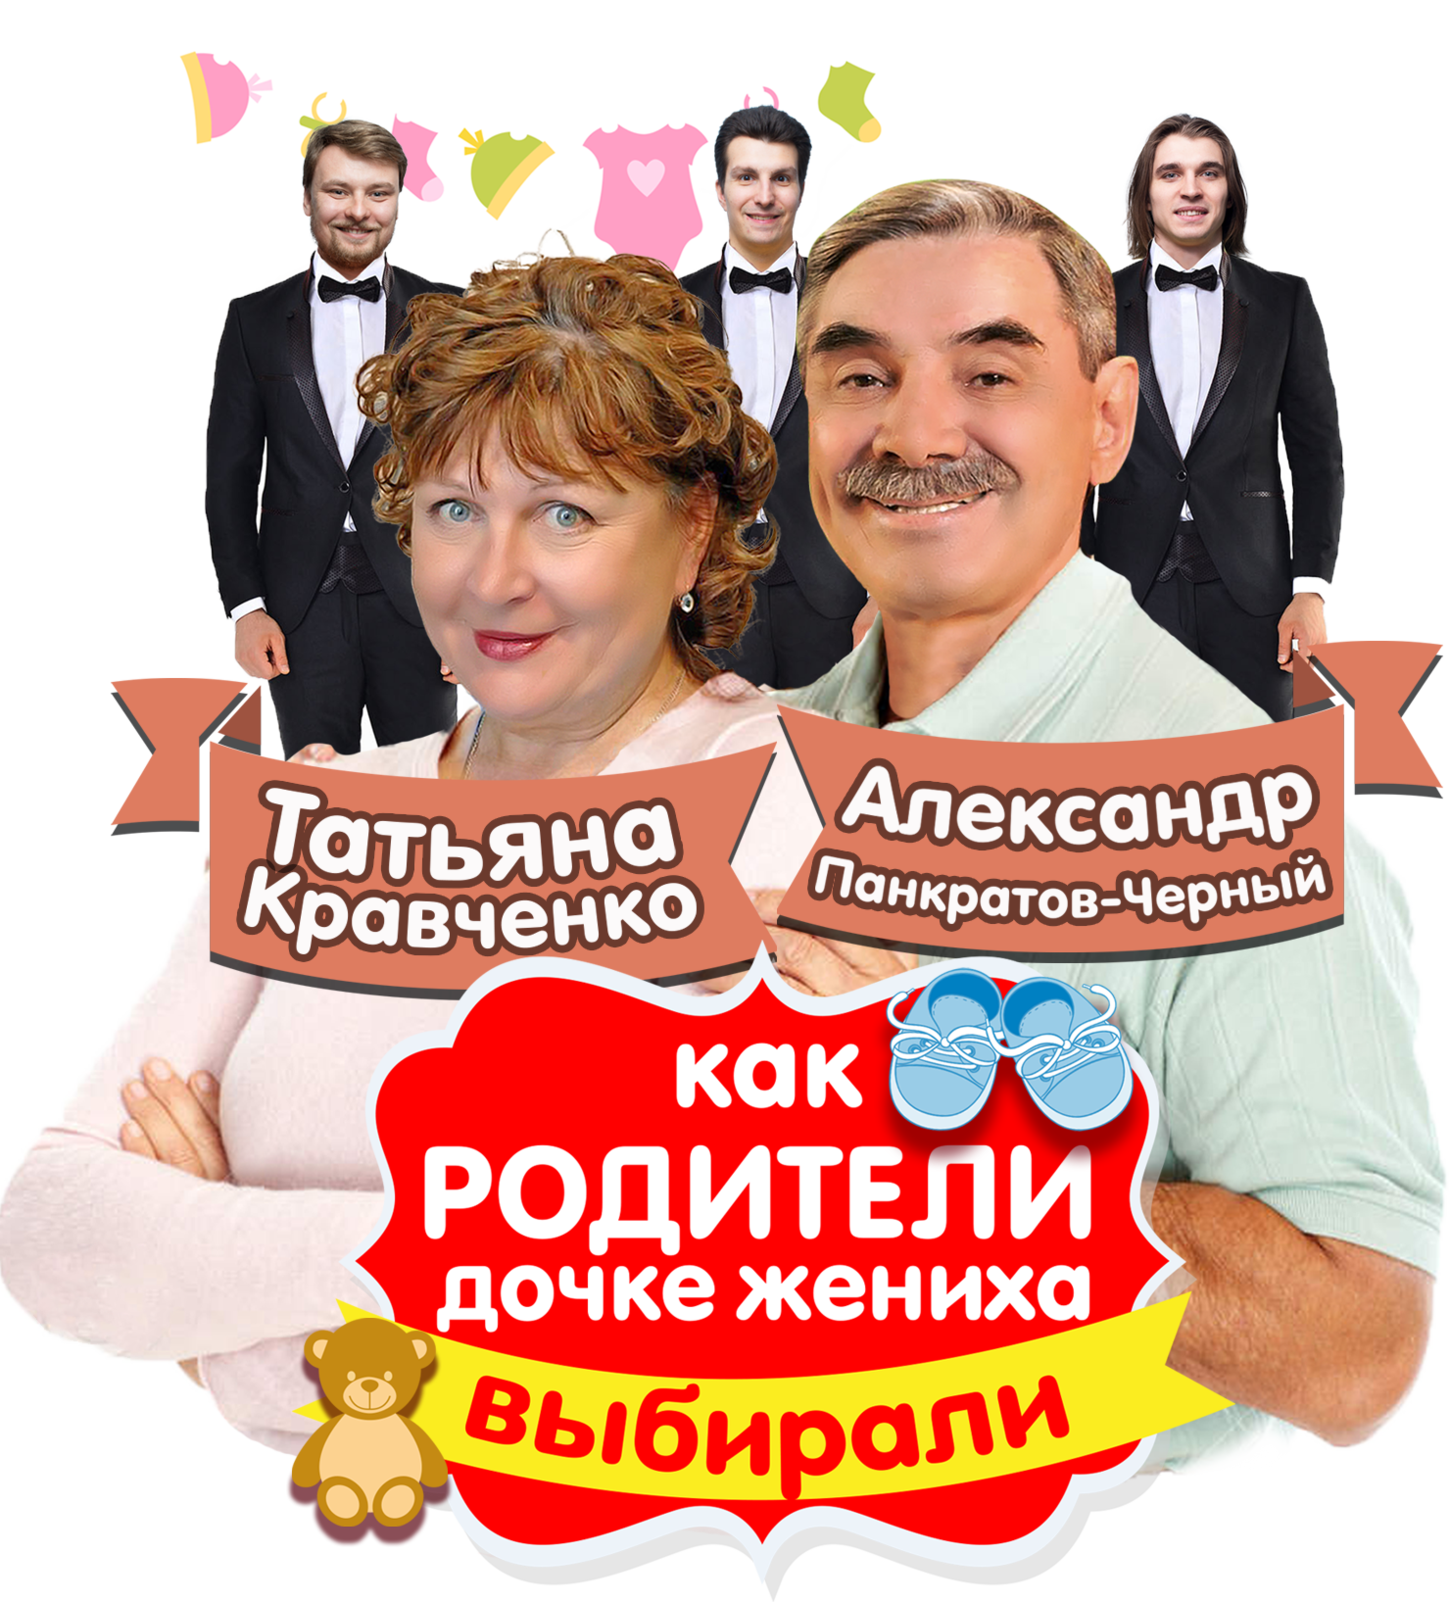 Спектакль с Панкратовым черным и Татьяной Кравченко.